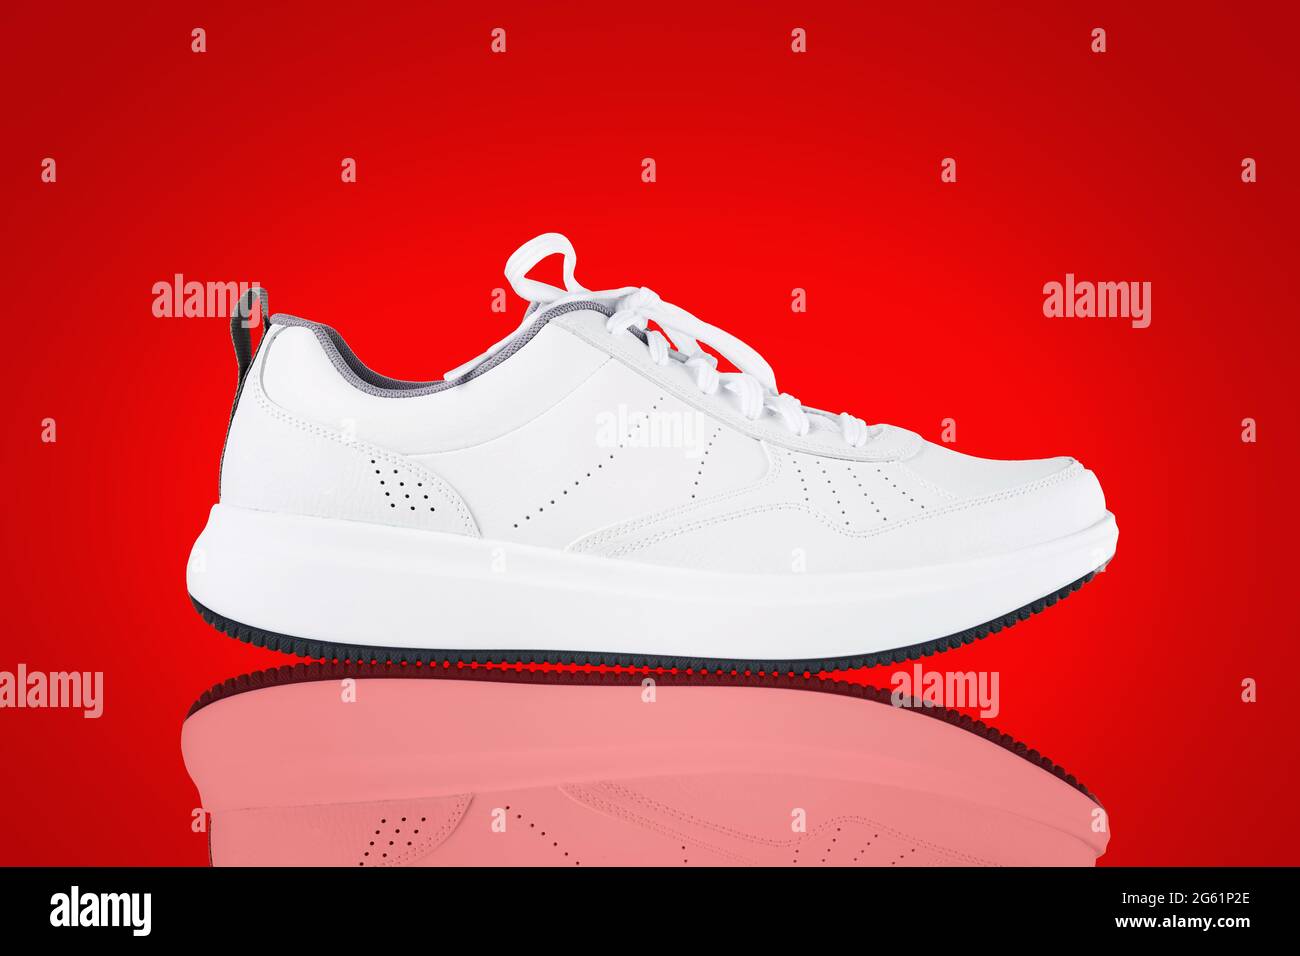 Nuova sneaker bianca isolata su sfondo rosso con riflessi. Primo piano delle scarpe sportive. Stile Street fashion Foto Stock